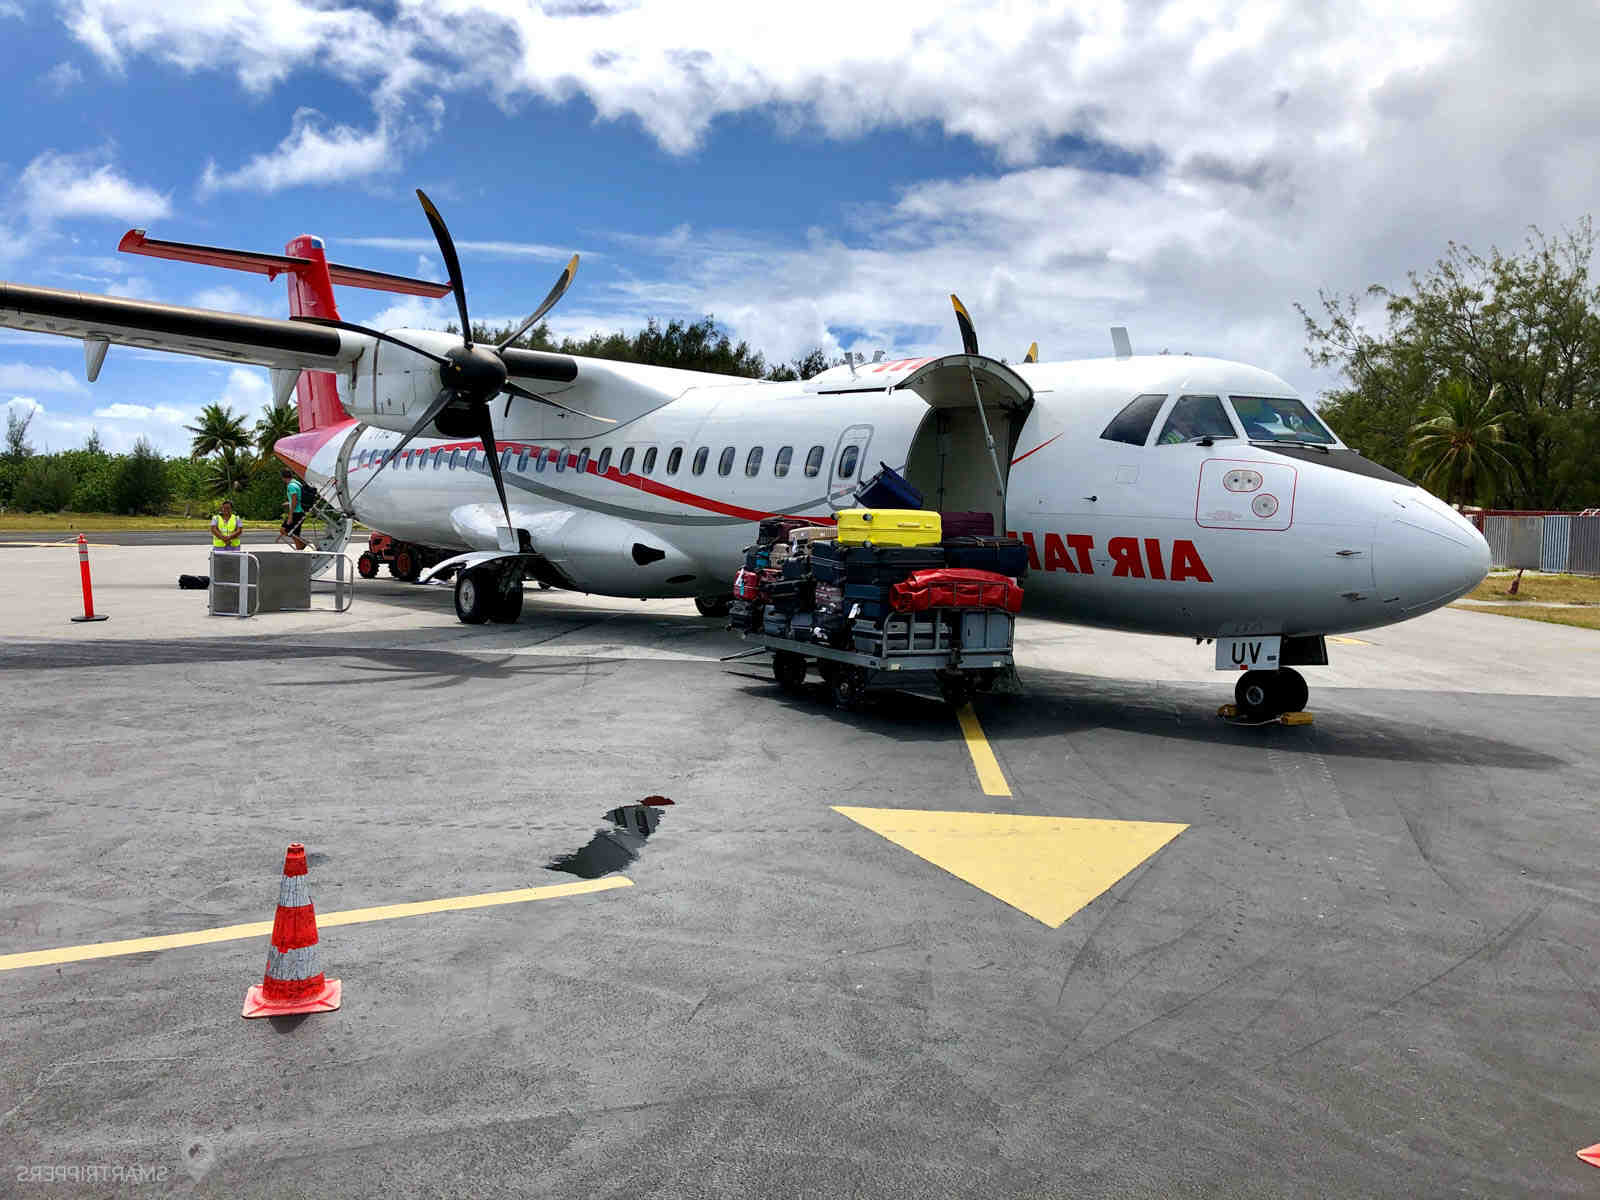 Сколько стоит билет на самолет до Таити?